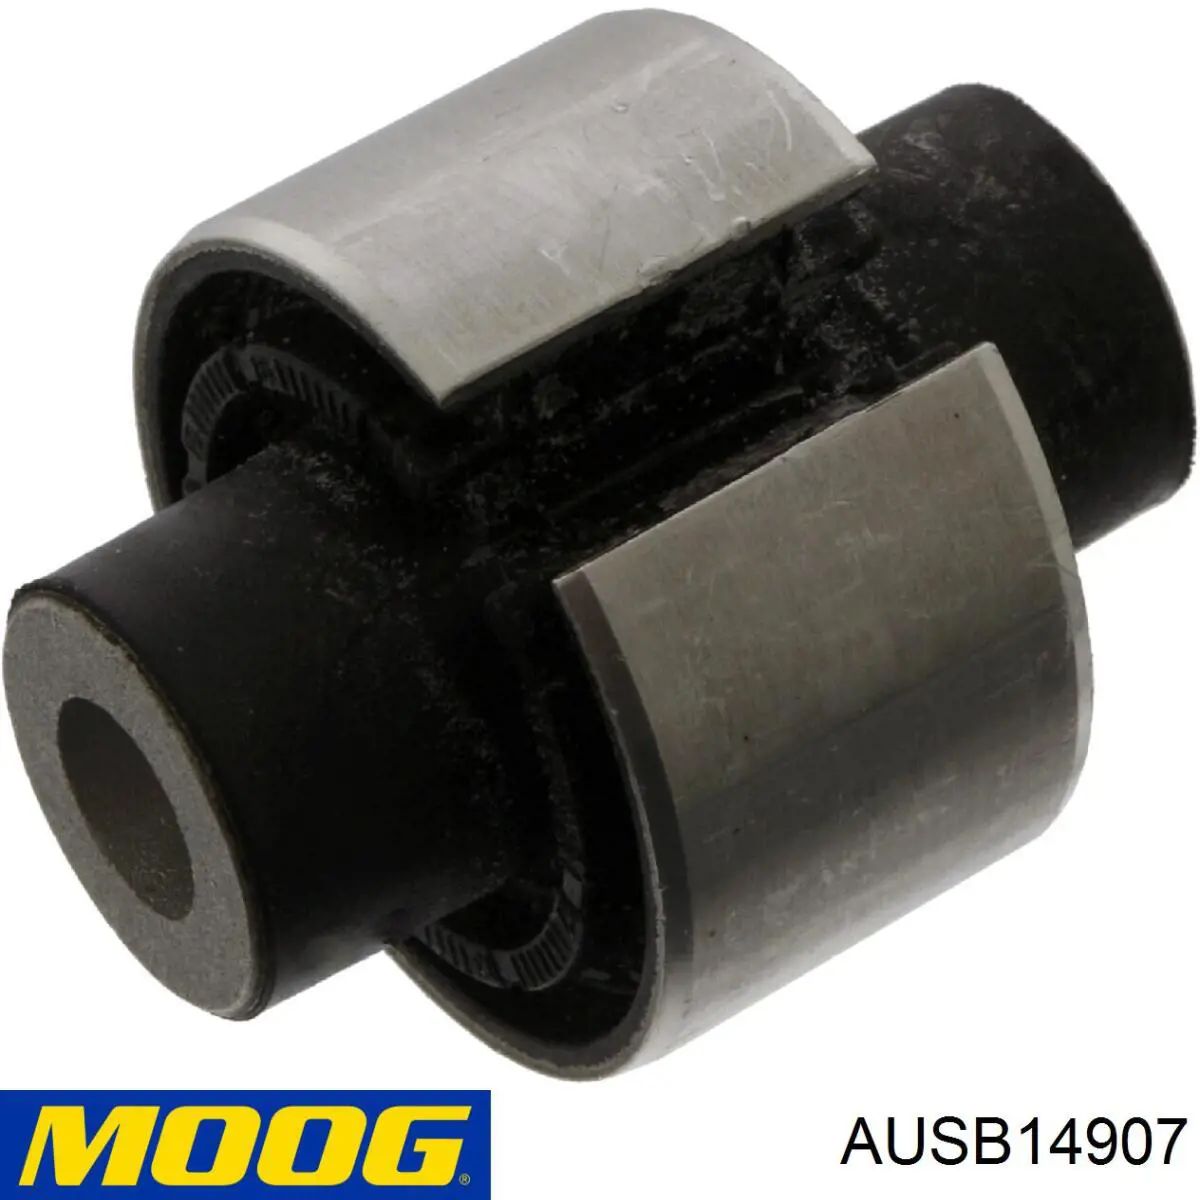 AU-SB-14907 Moog bloco silencioso do braço oscilante inferior traseiro